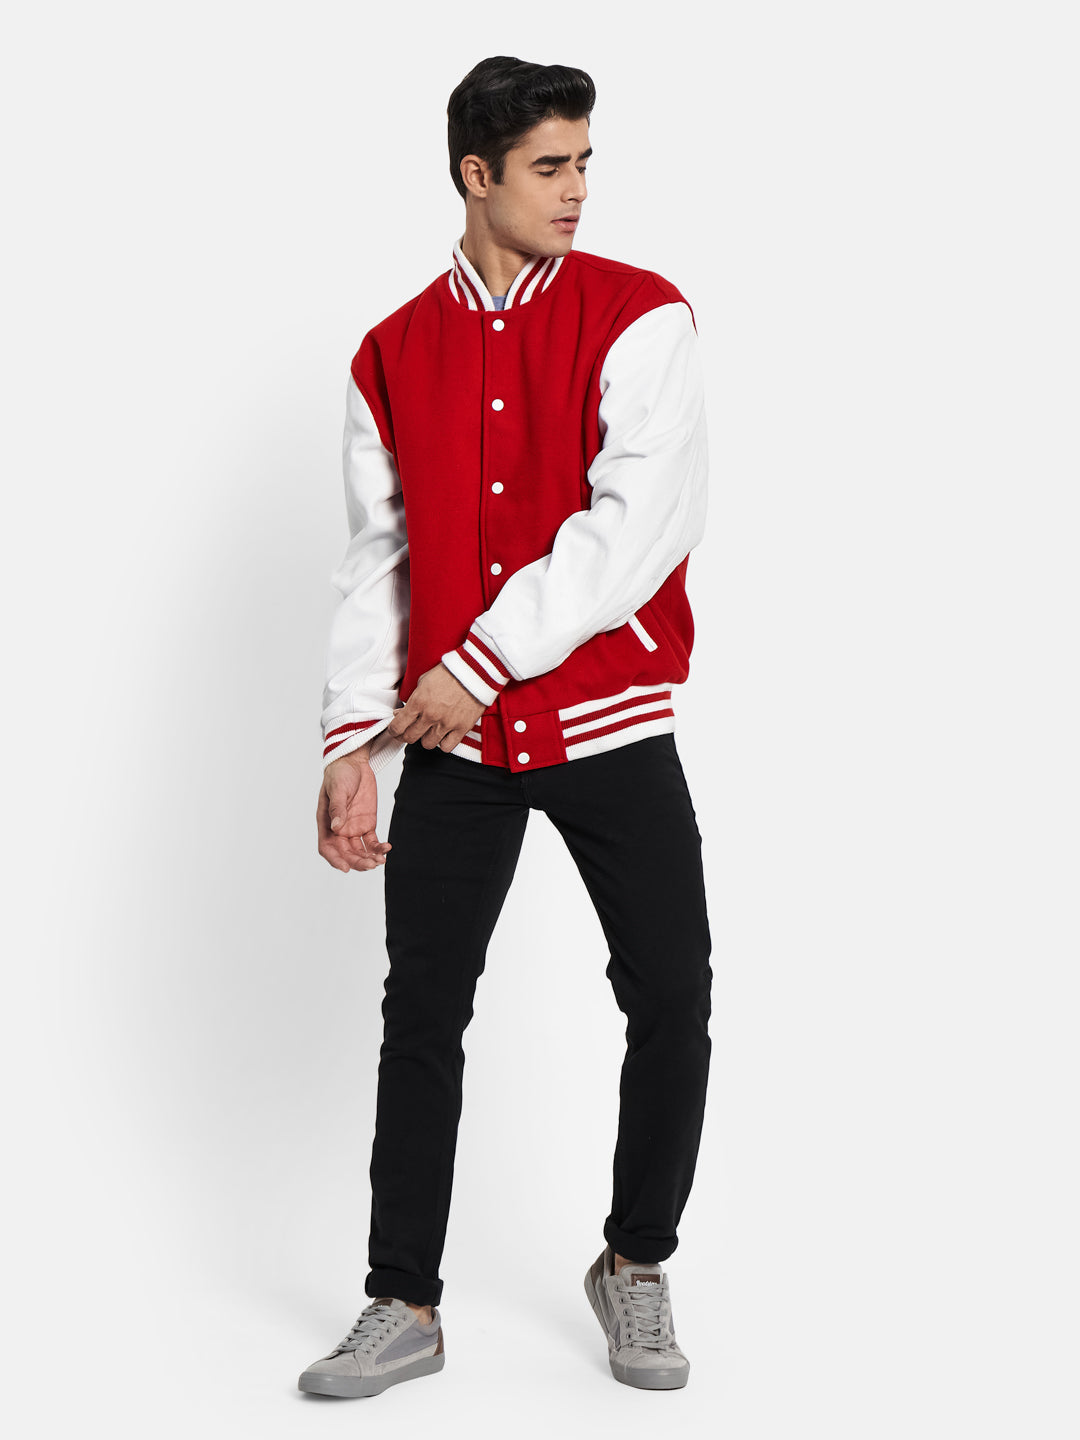 Red-K Varsity Jacket